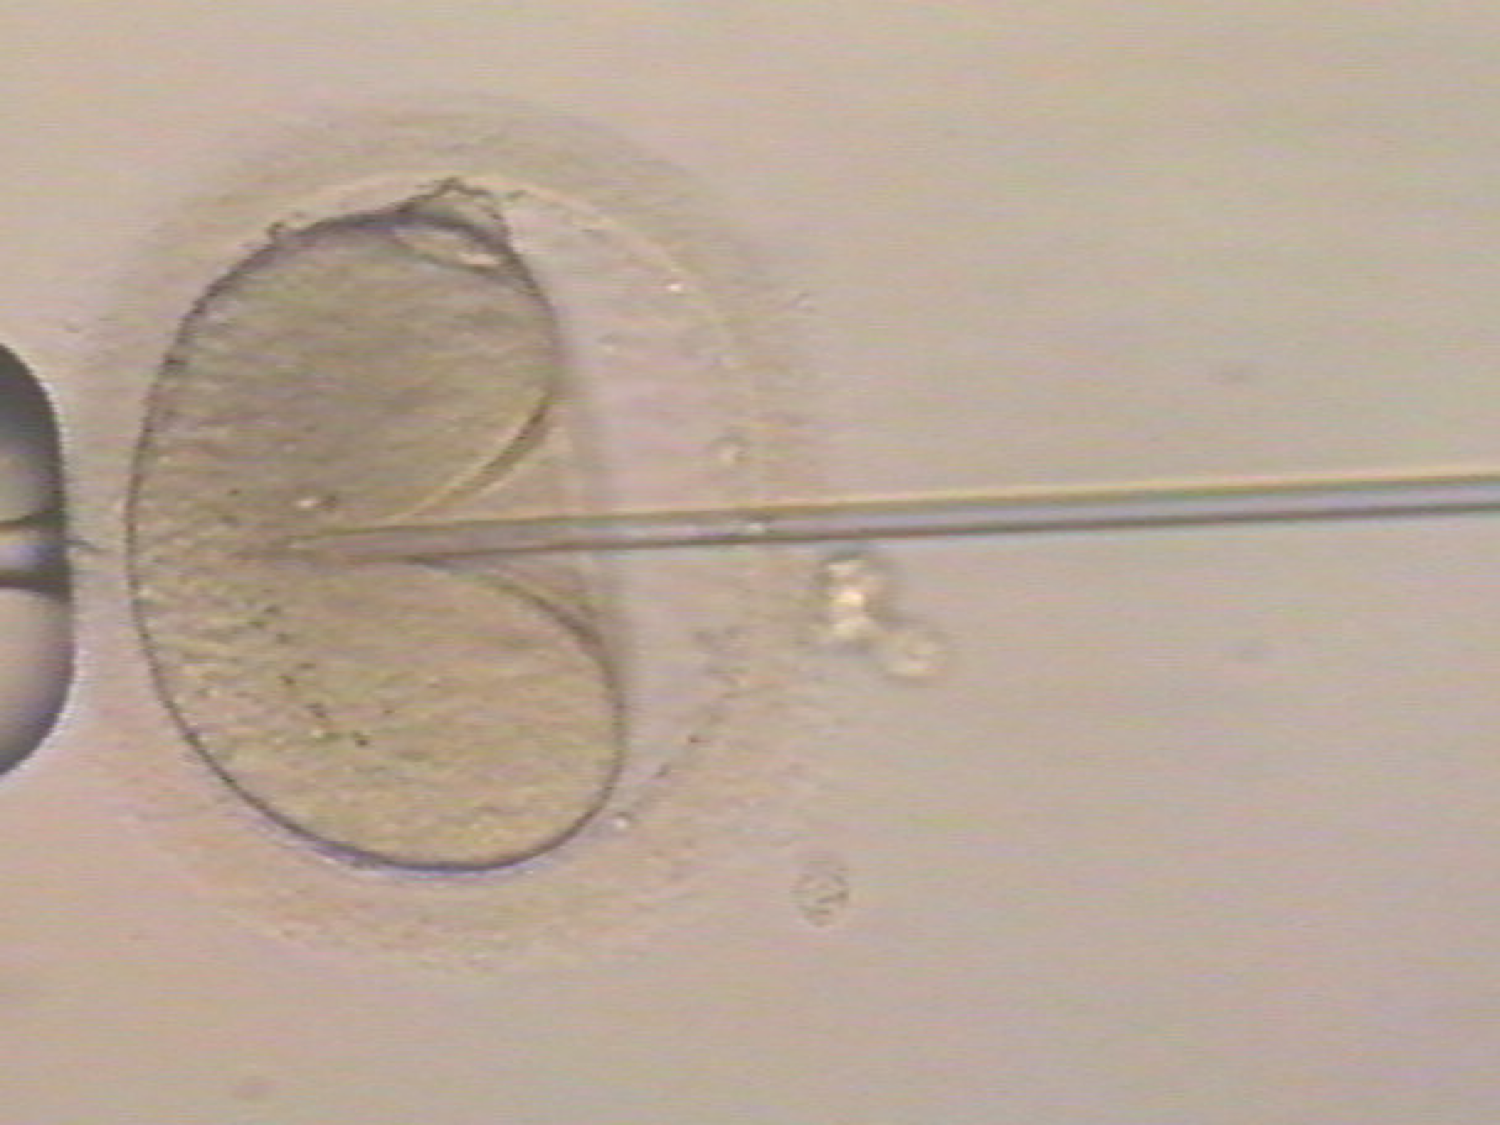 DNA損傷精子である場合の顕微授精と発達障害の関係性